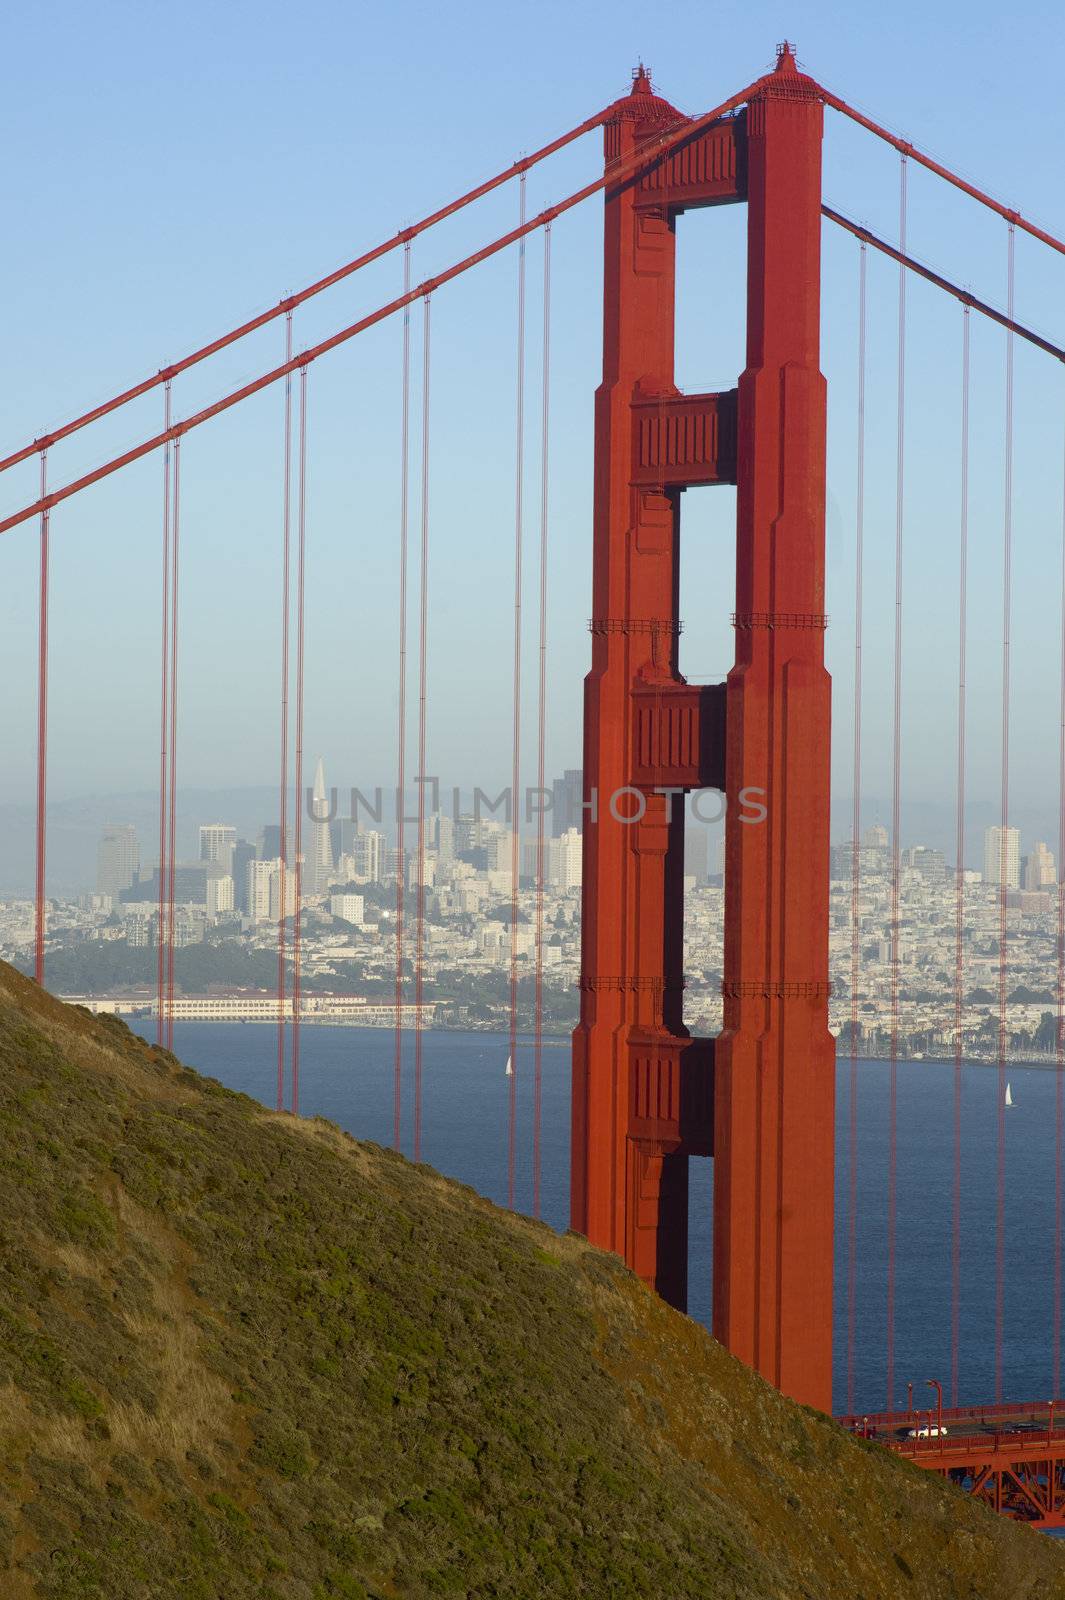 San Francisco as seen through the Golden Gate Bridge